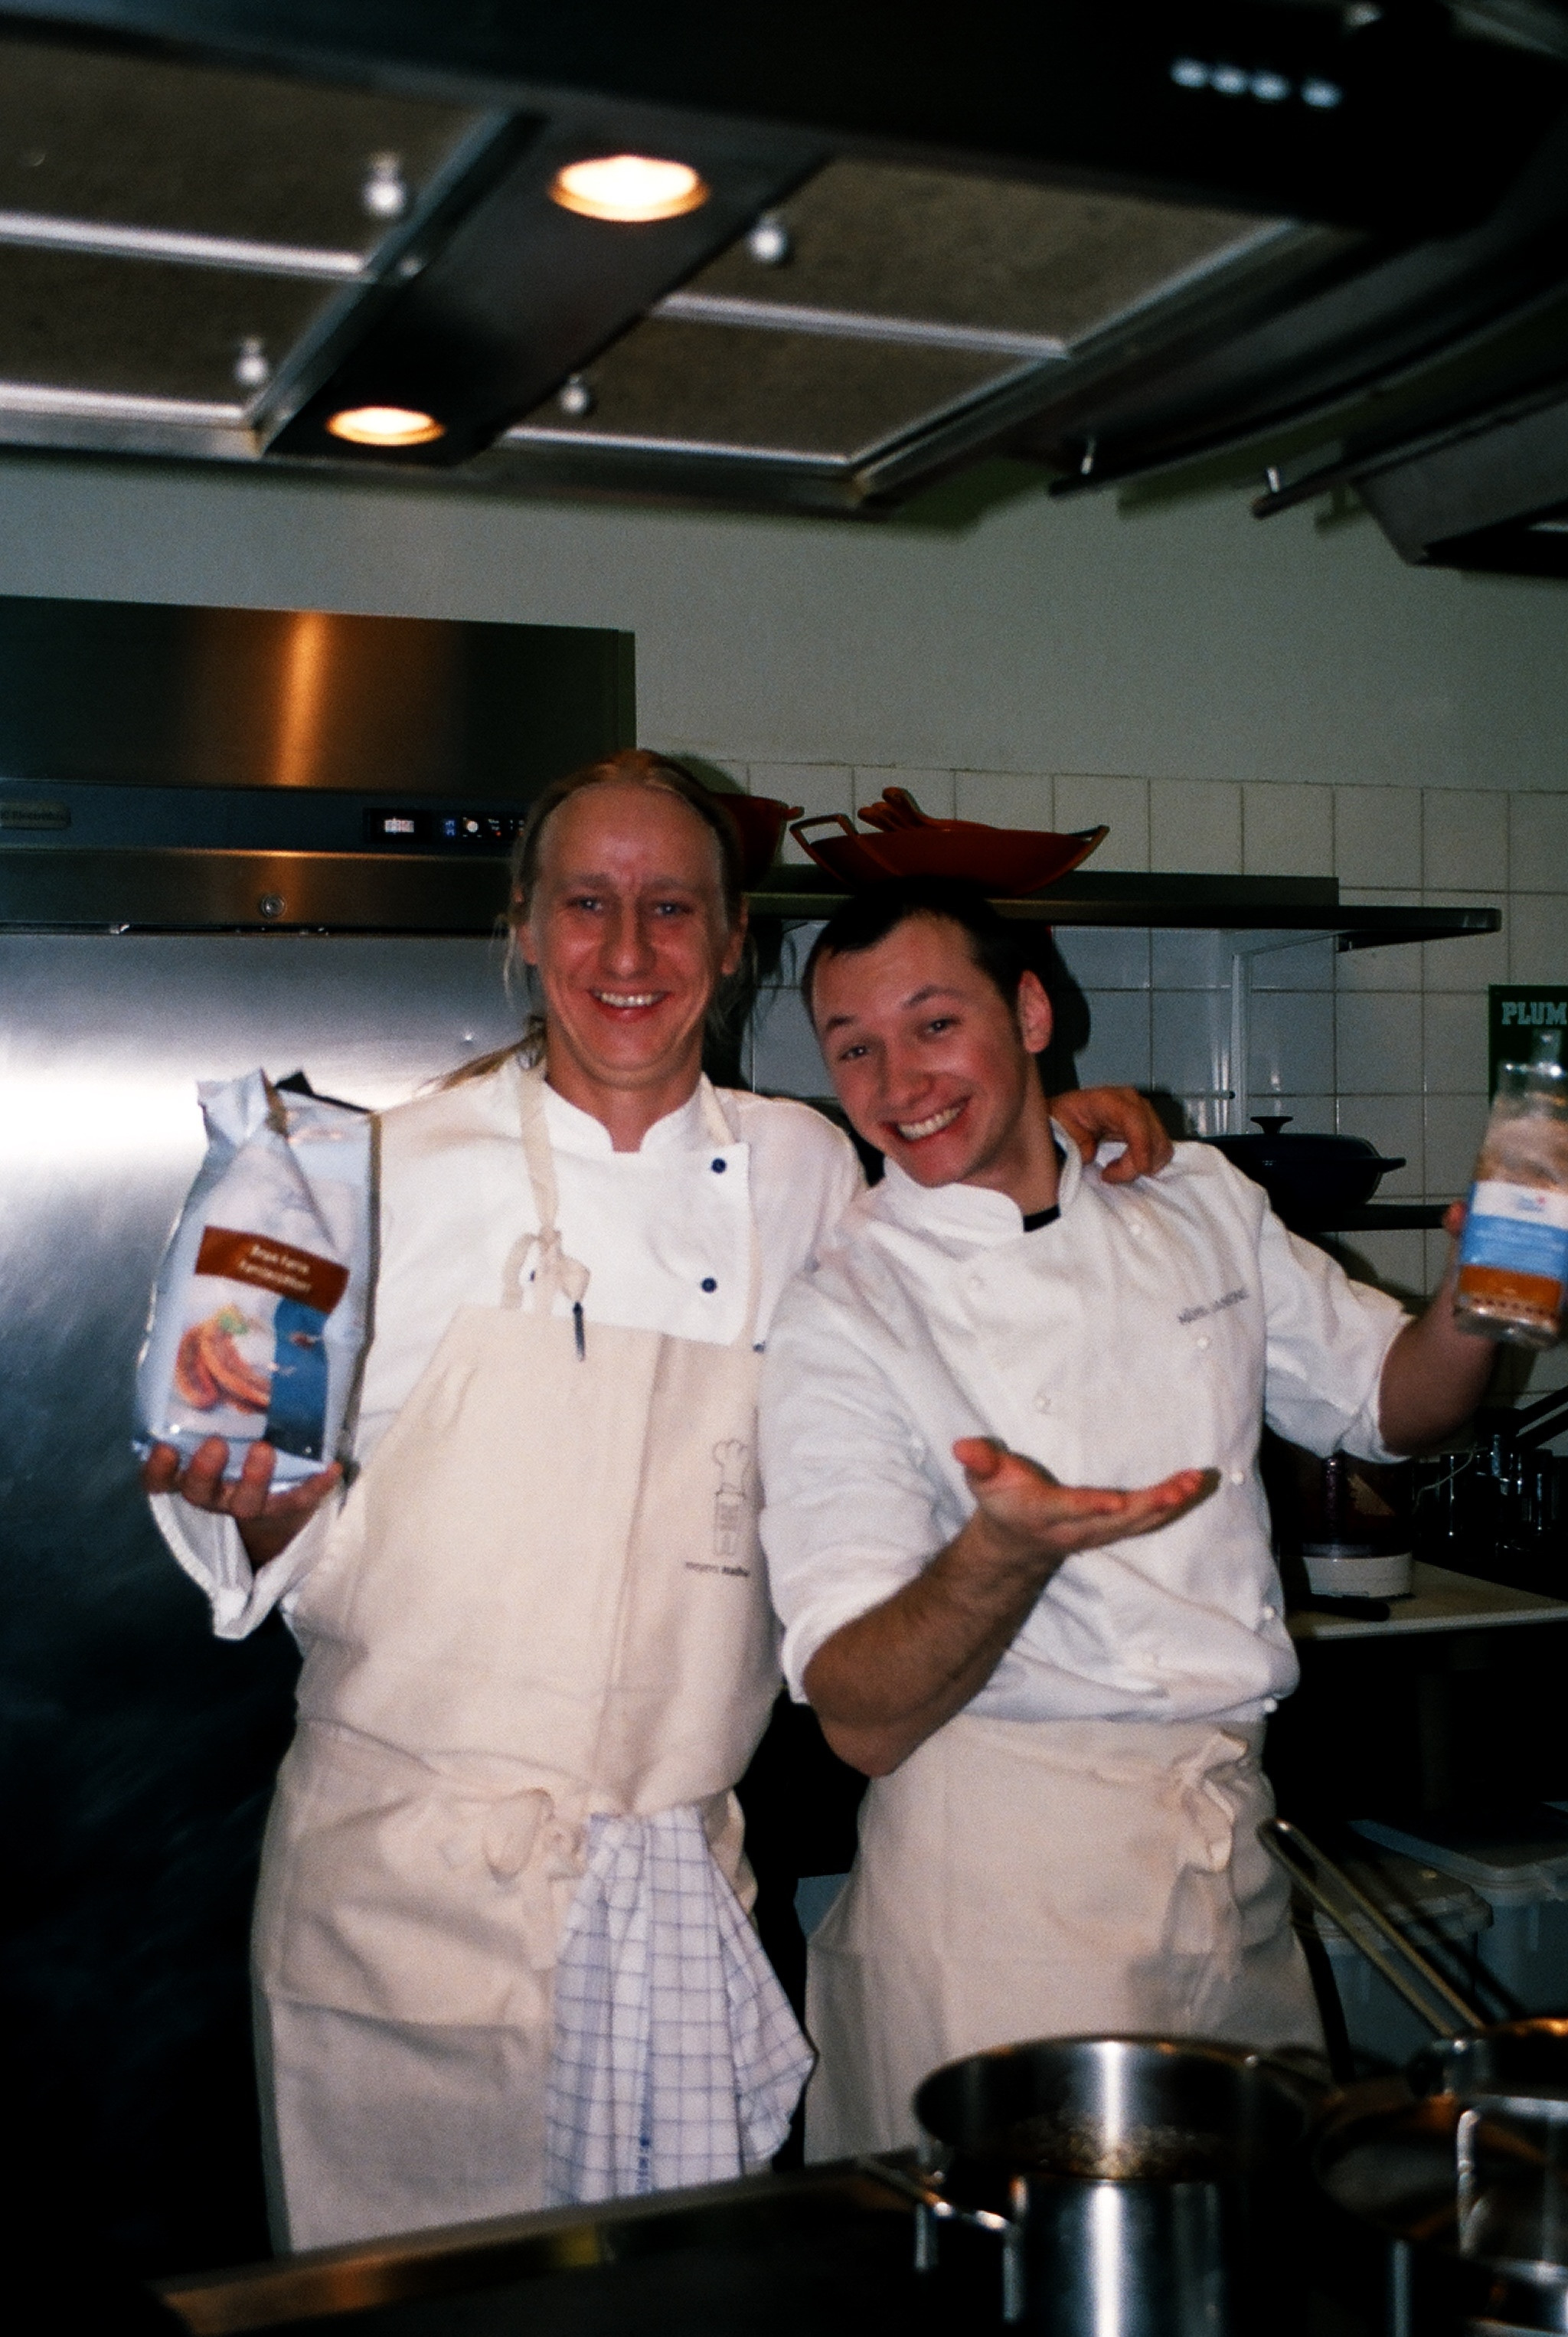 Bildē Māris ar šefpavāru Ēriku Dreibantu, smeļoties jaunu pieredzi Dānijā radošā seminārā pie pasaulslavenā restorāna “Noma” līdzīpašnieka.